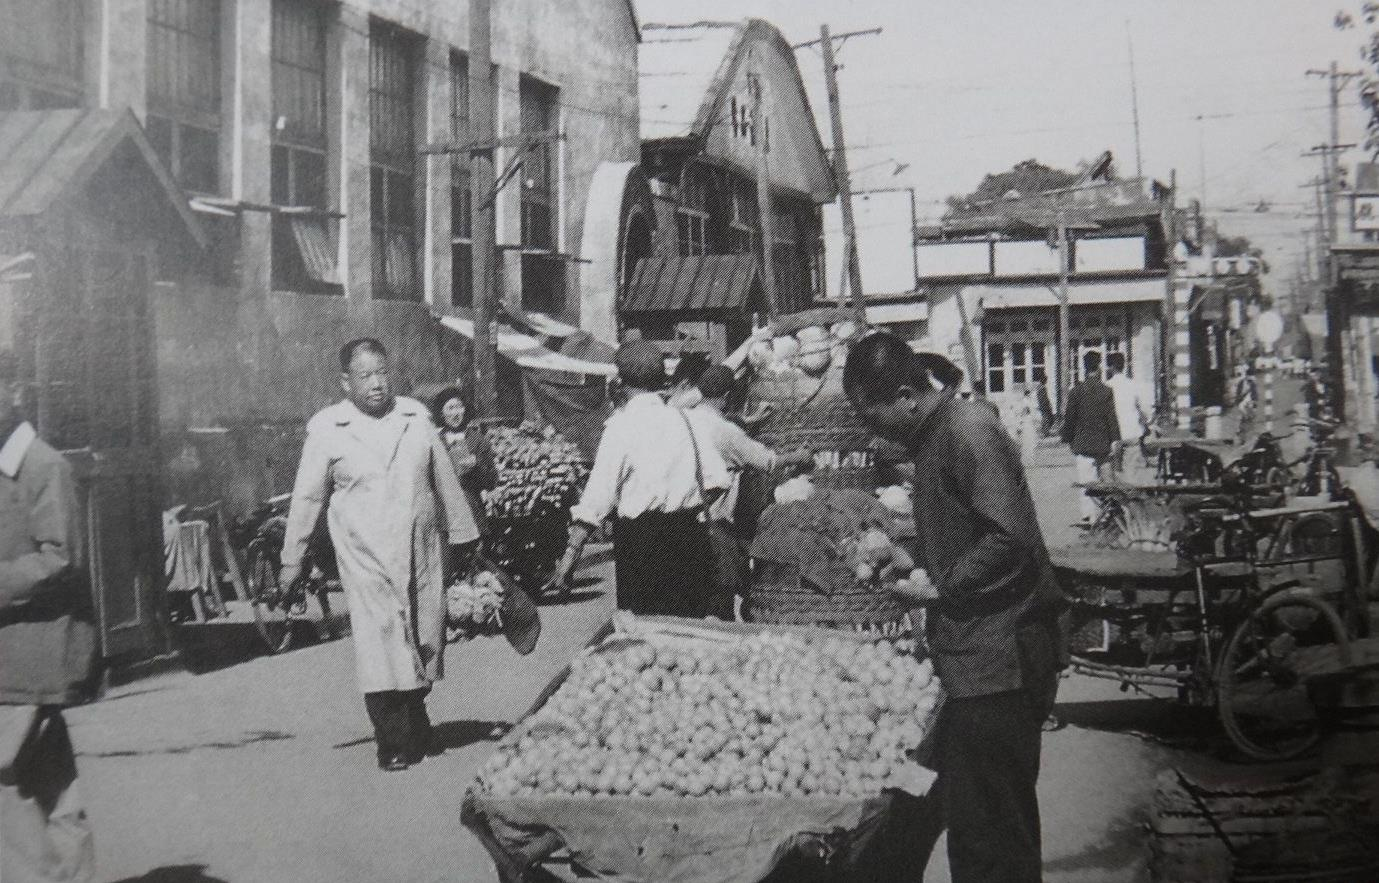 1950年，重庆一位菜农因讨价还价暴露身份，被捕后扭送公审判死刑